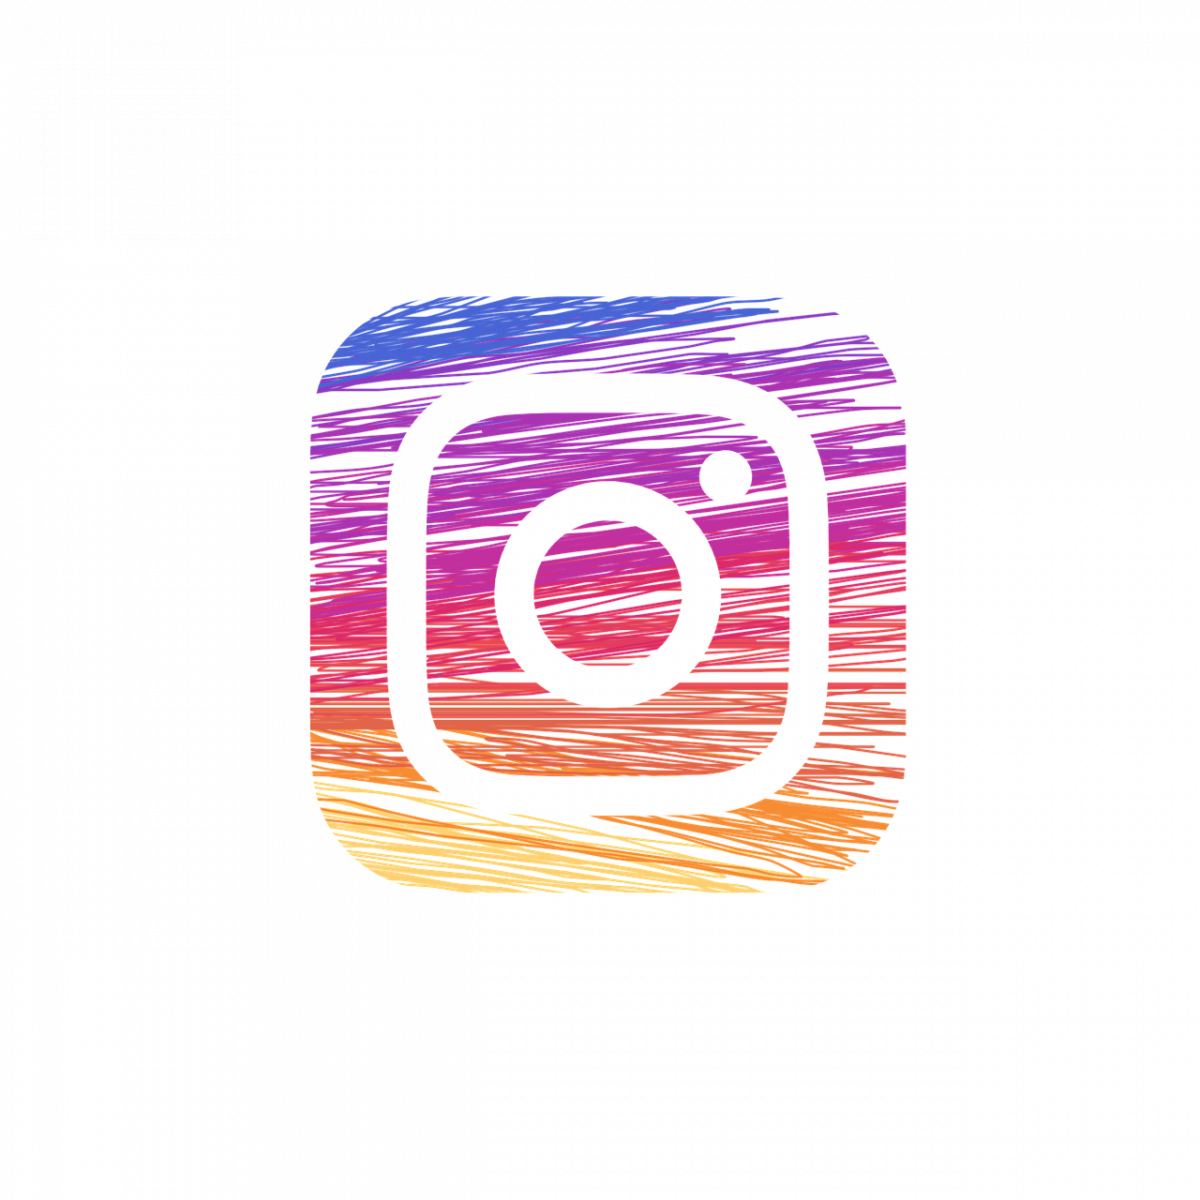 Le Facebook Studio Creator est enfin disponible pour planifier vos publications Instagram ! 